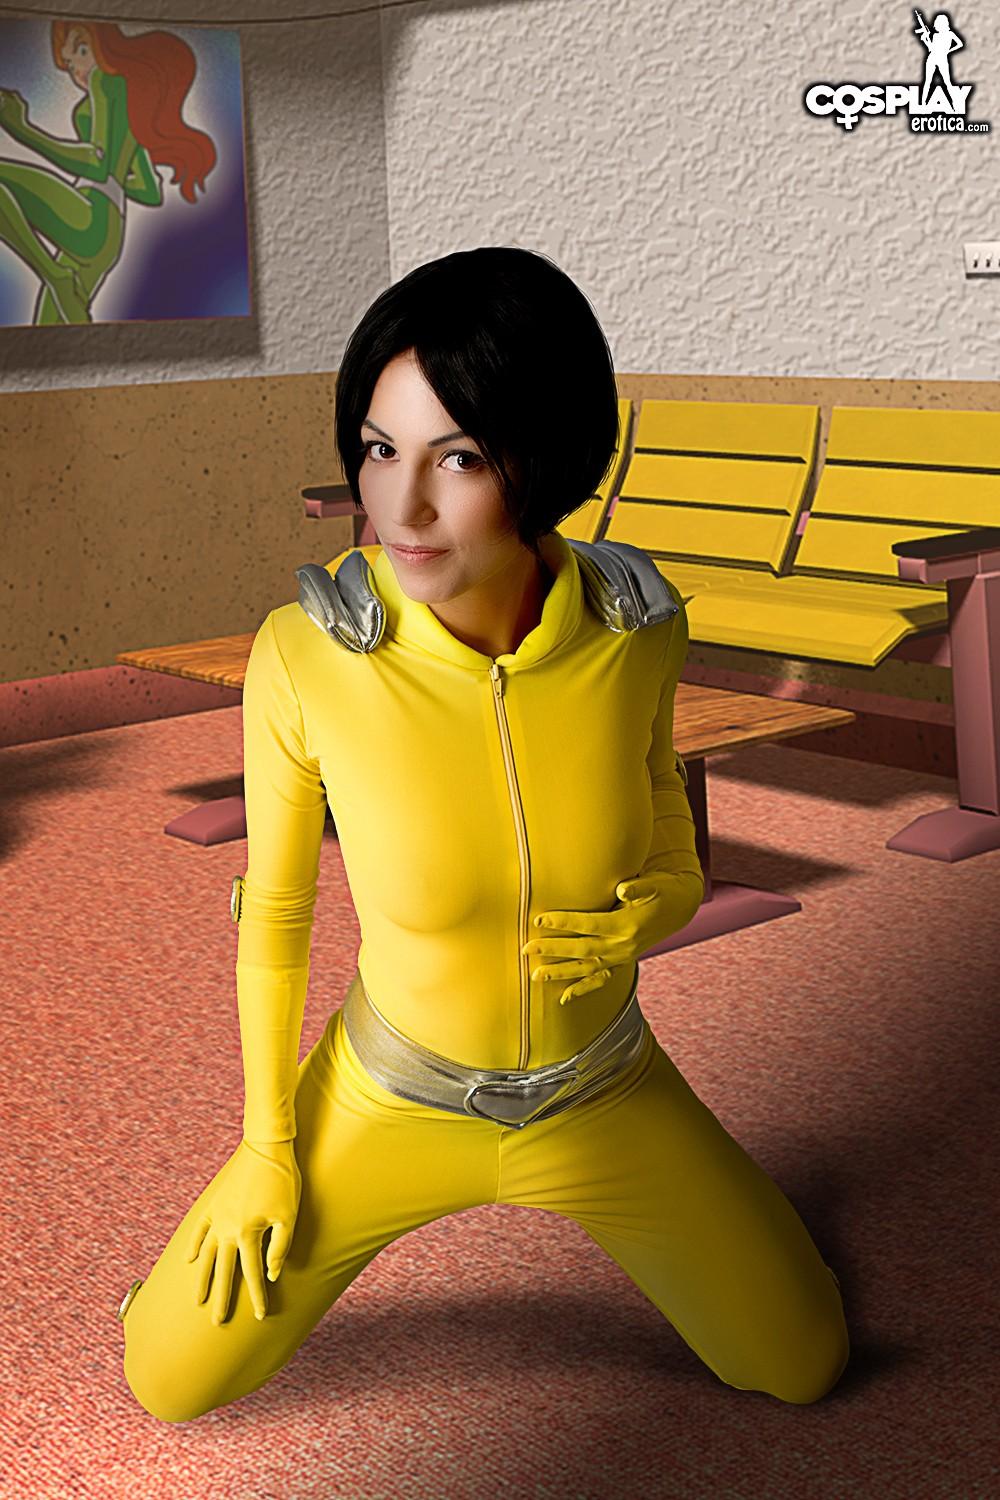 Hot cosplayer Devorah exposes her tight body in "Whoop" #54047146